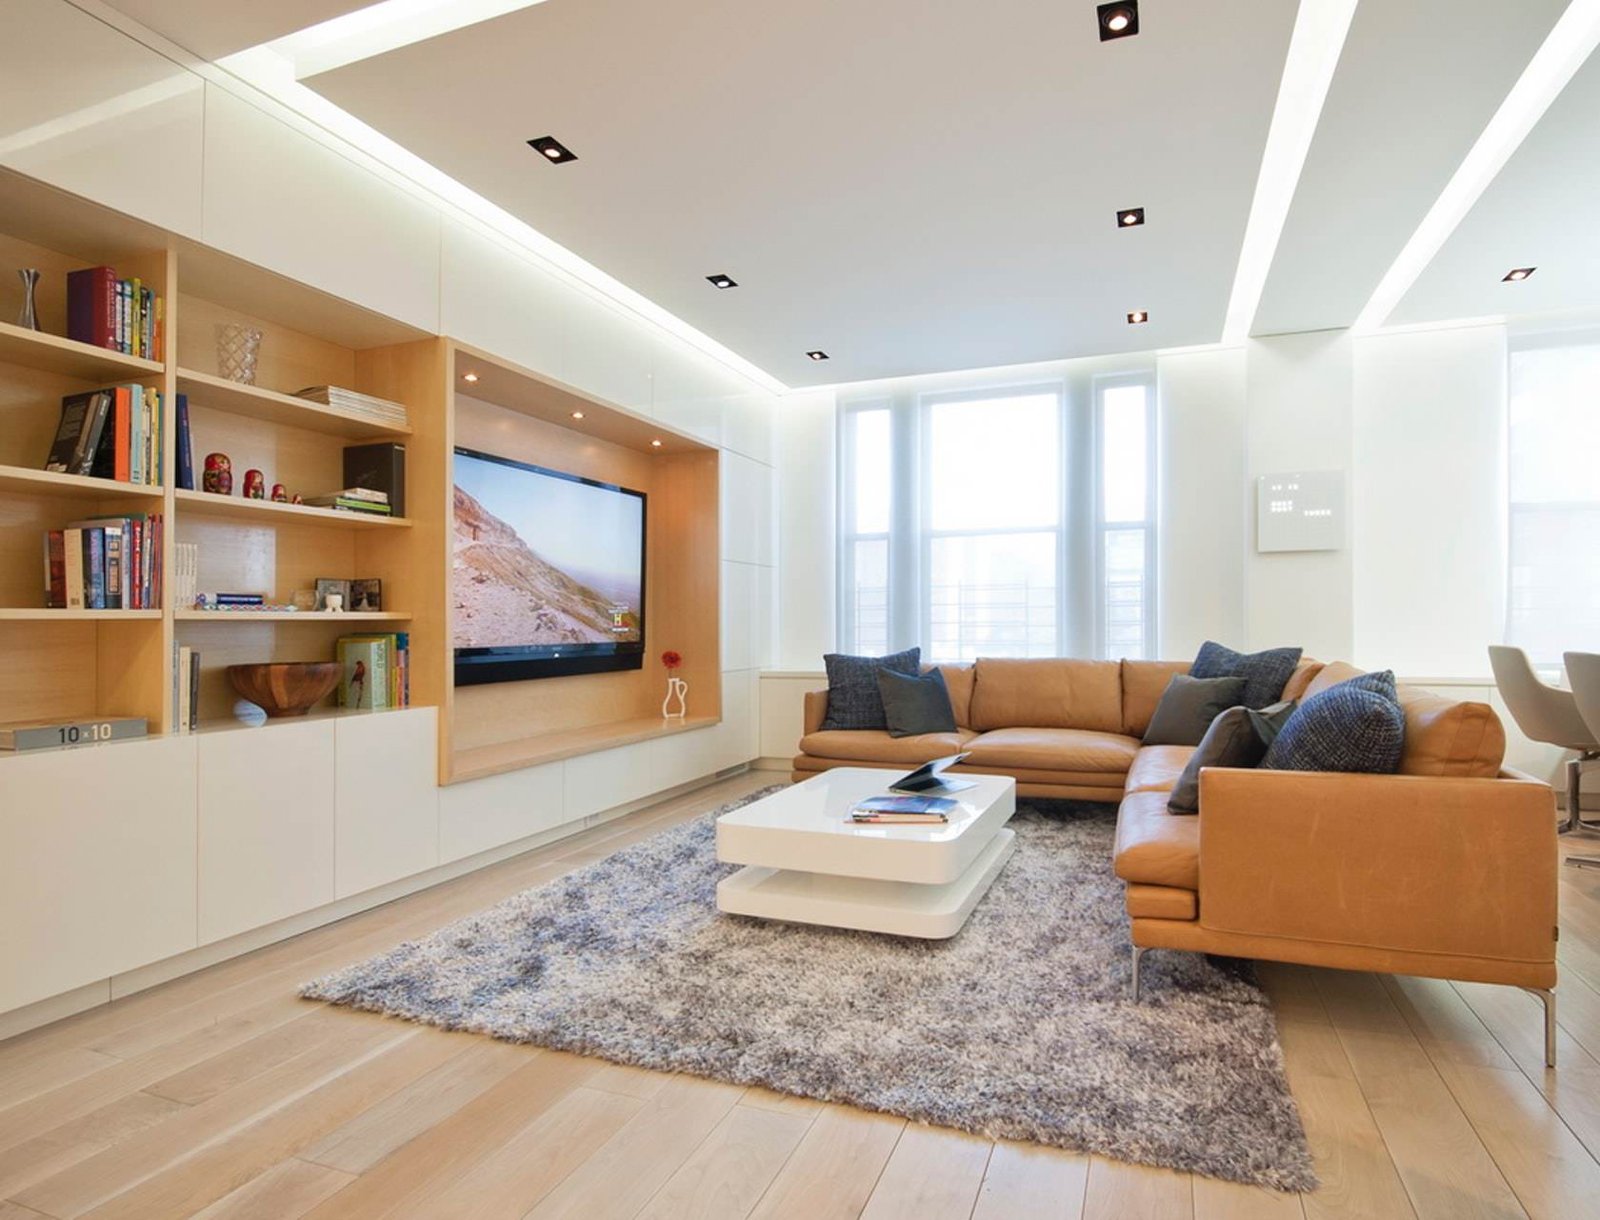 Idea soggiorno moderno in colori dominanti bianco e marrone. Pavimento in legno così come l'interno della libreria. Soffitto in cartongesso con particolare illuminazione